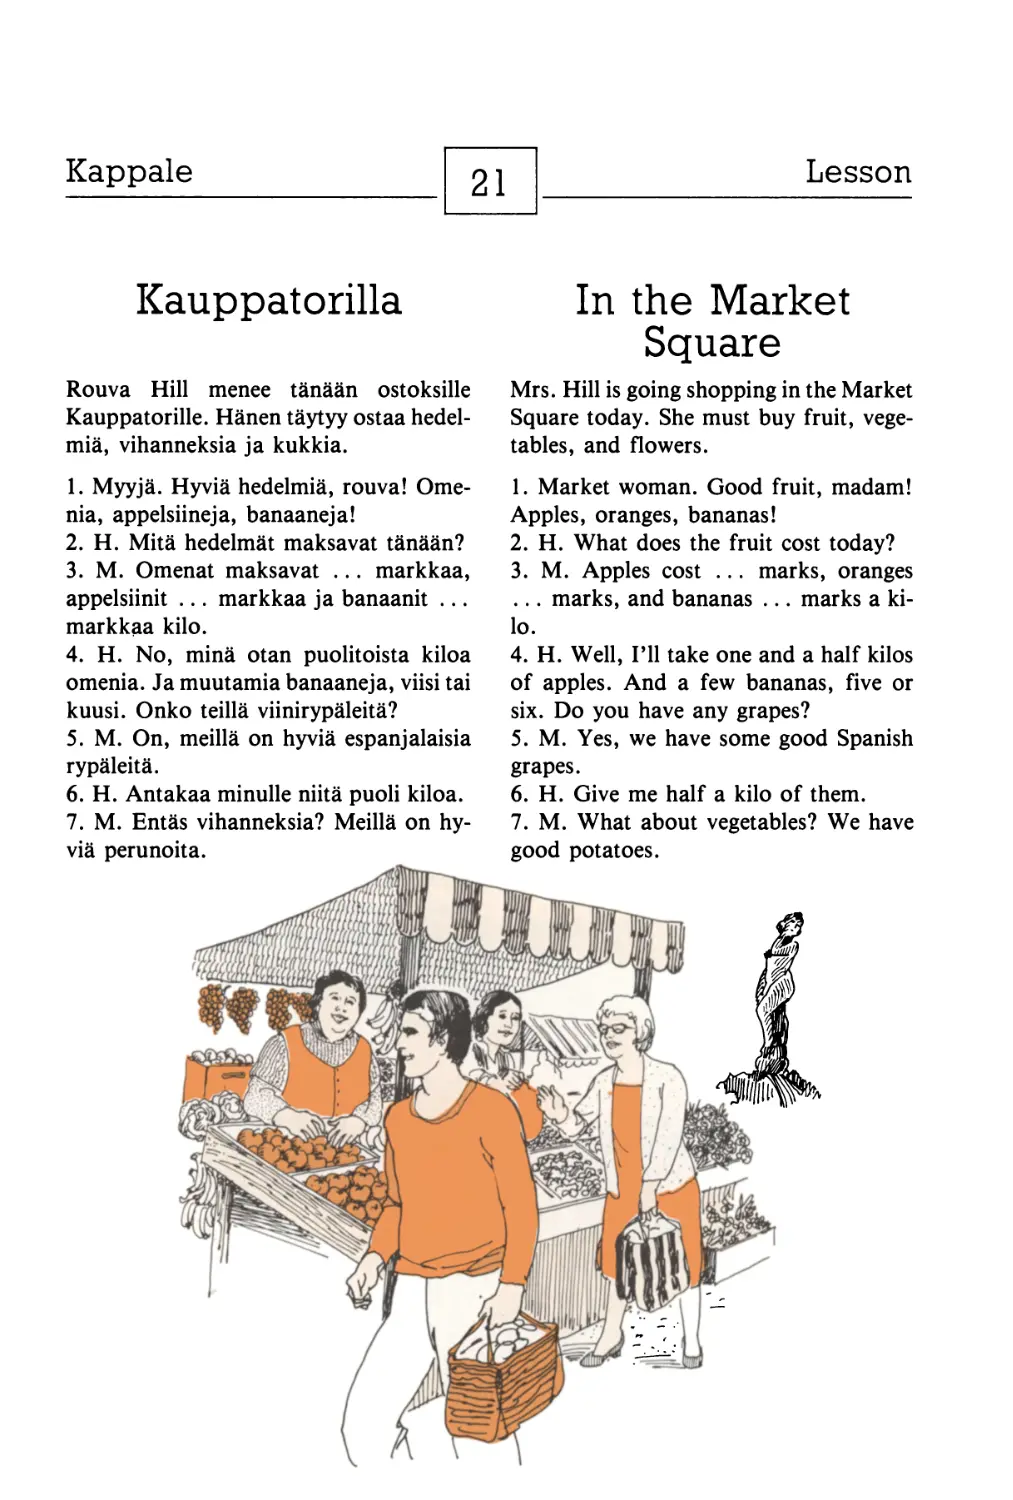 21. Kauppatorilla — In the Market Square